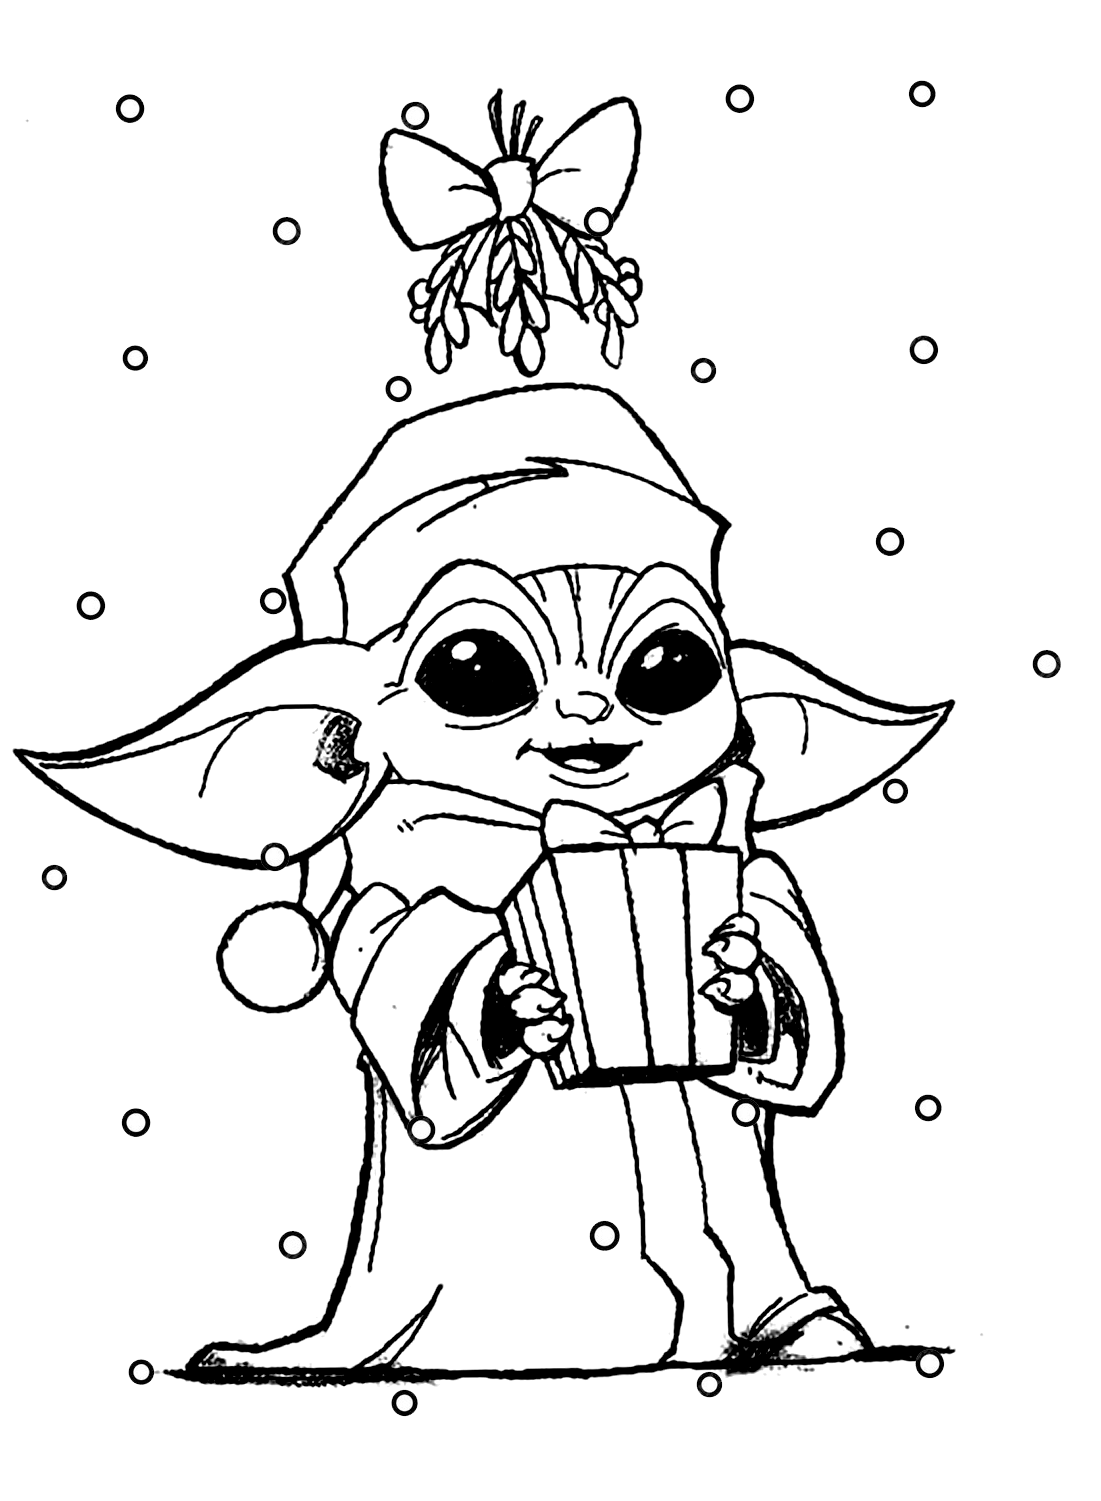 Pagina a colori di Baby Yoda e regalo di Natale